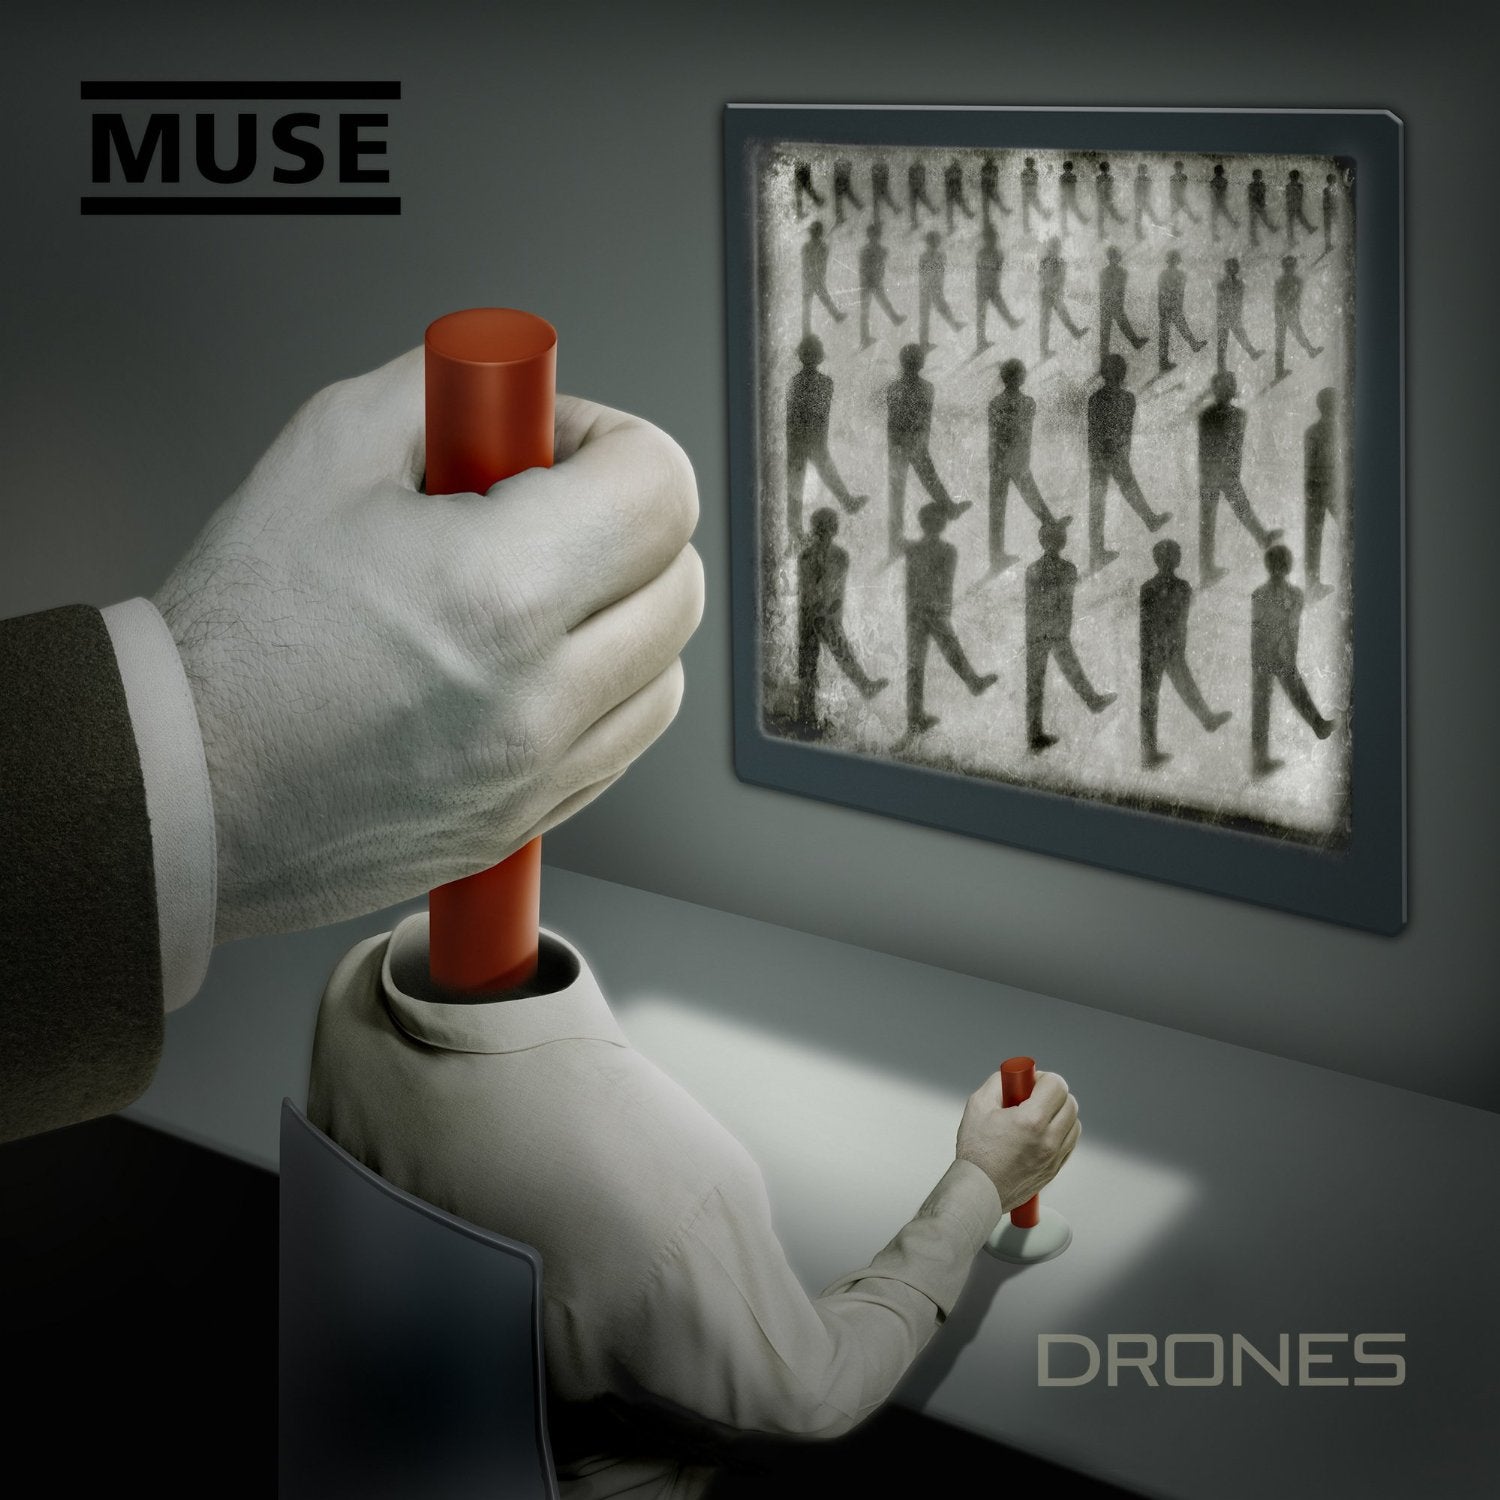 Muse "Drones" 2x12" Vinyl